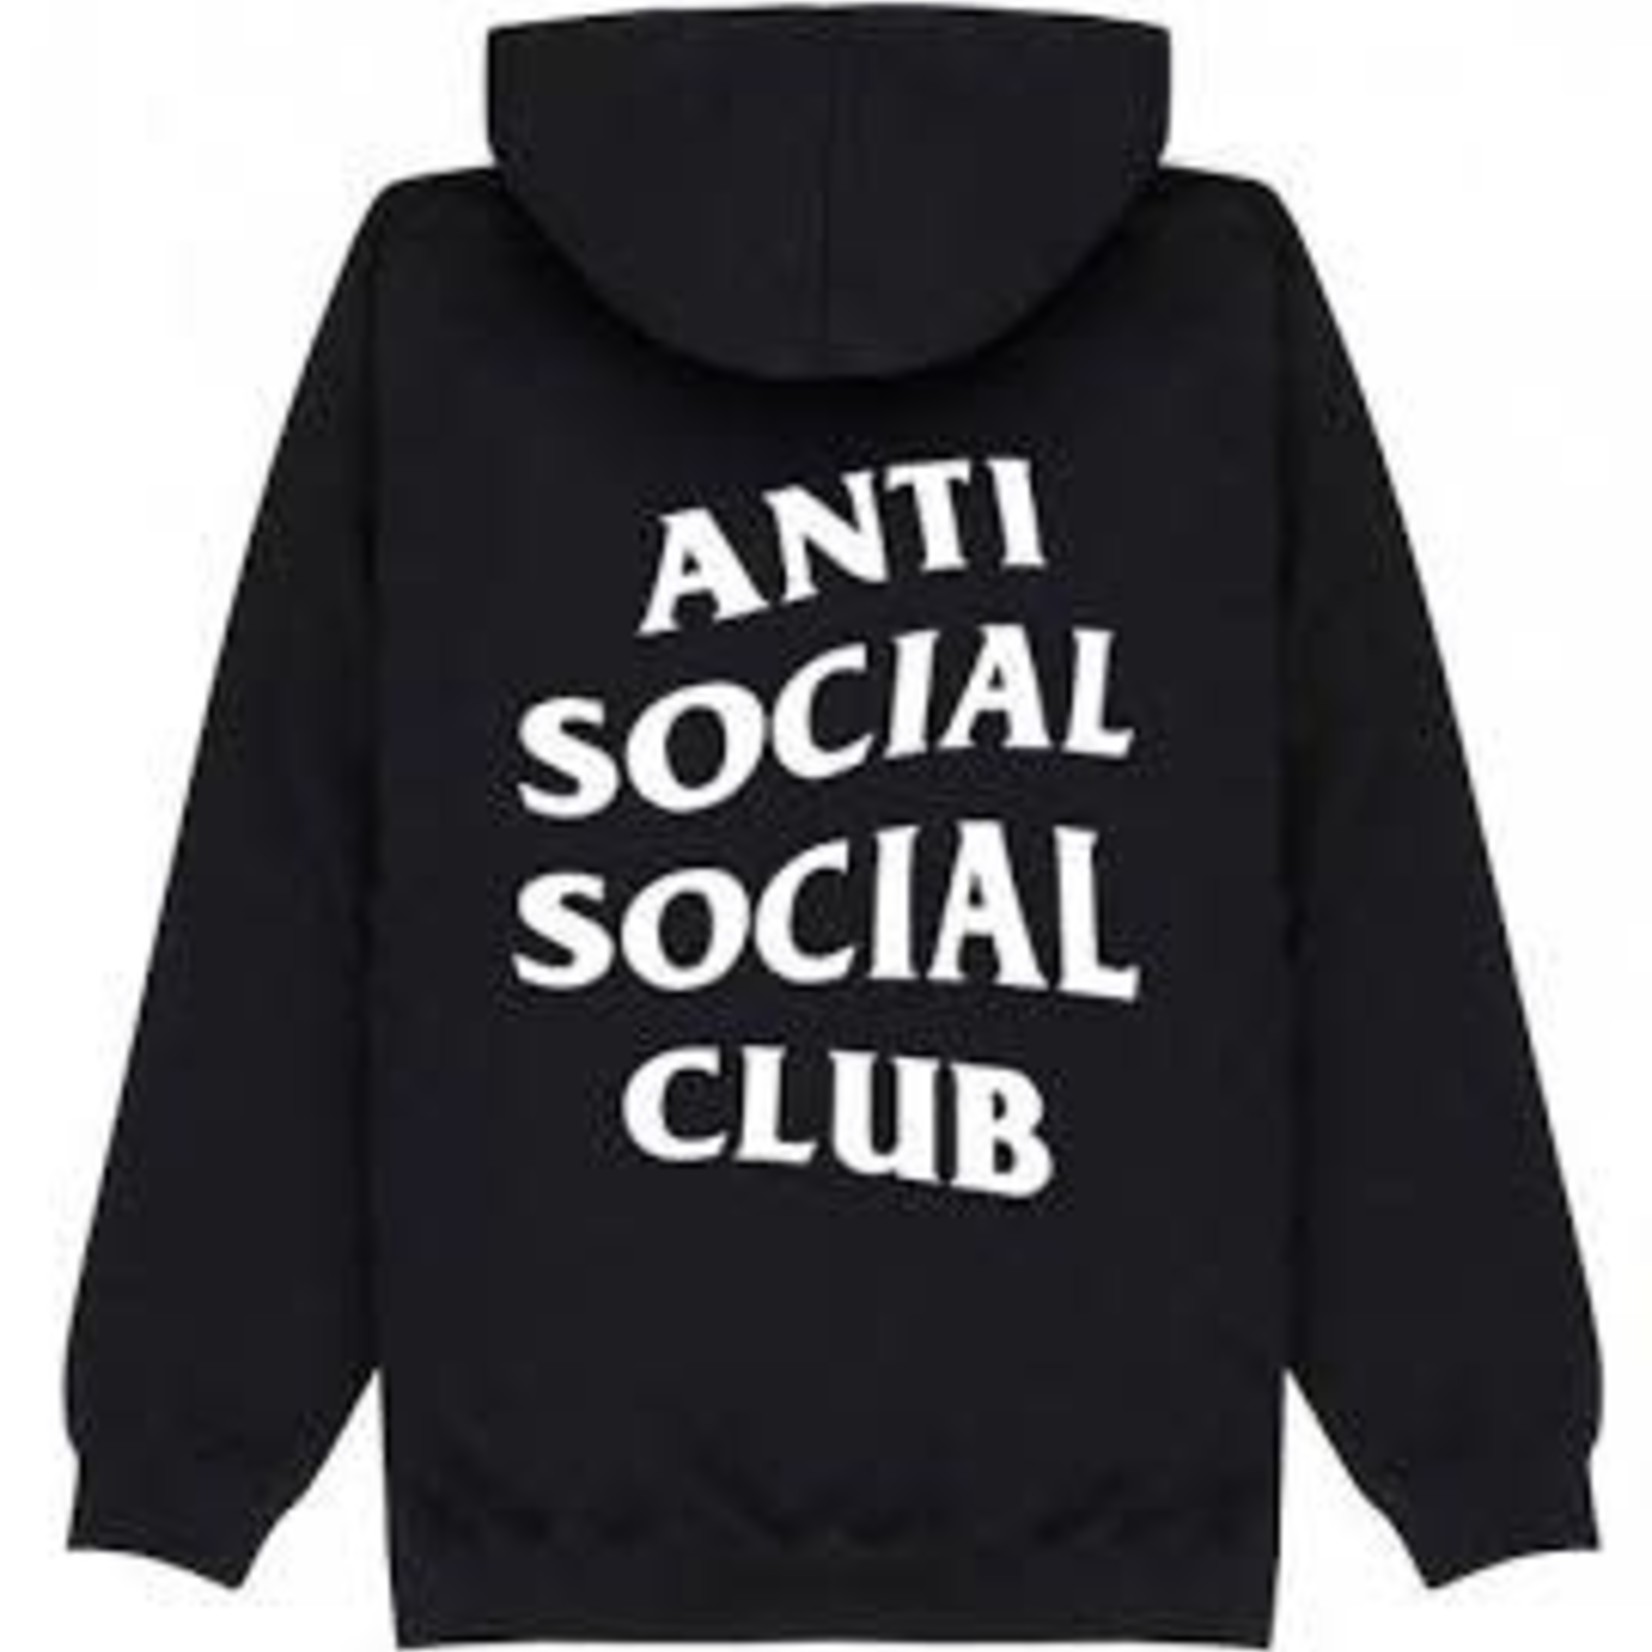 Anti Social Social Club Hoodies